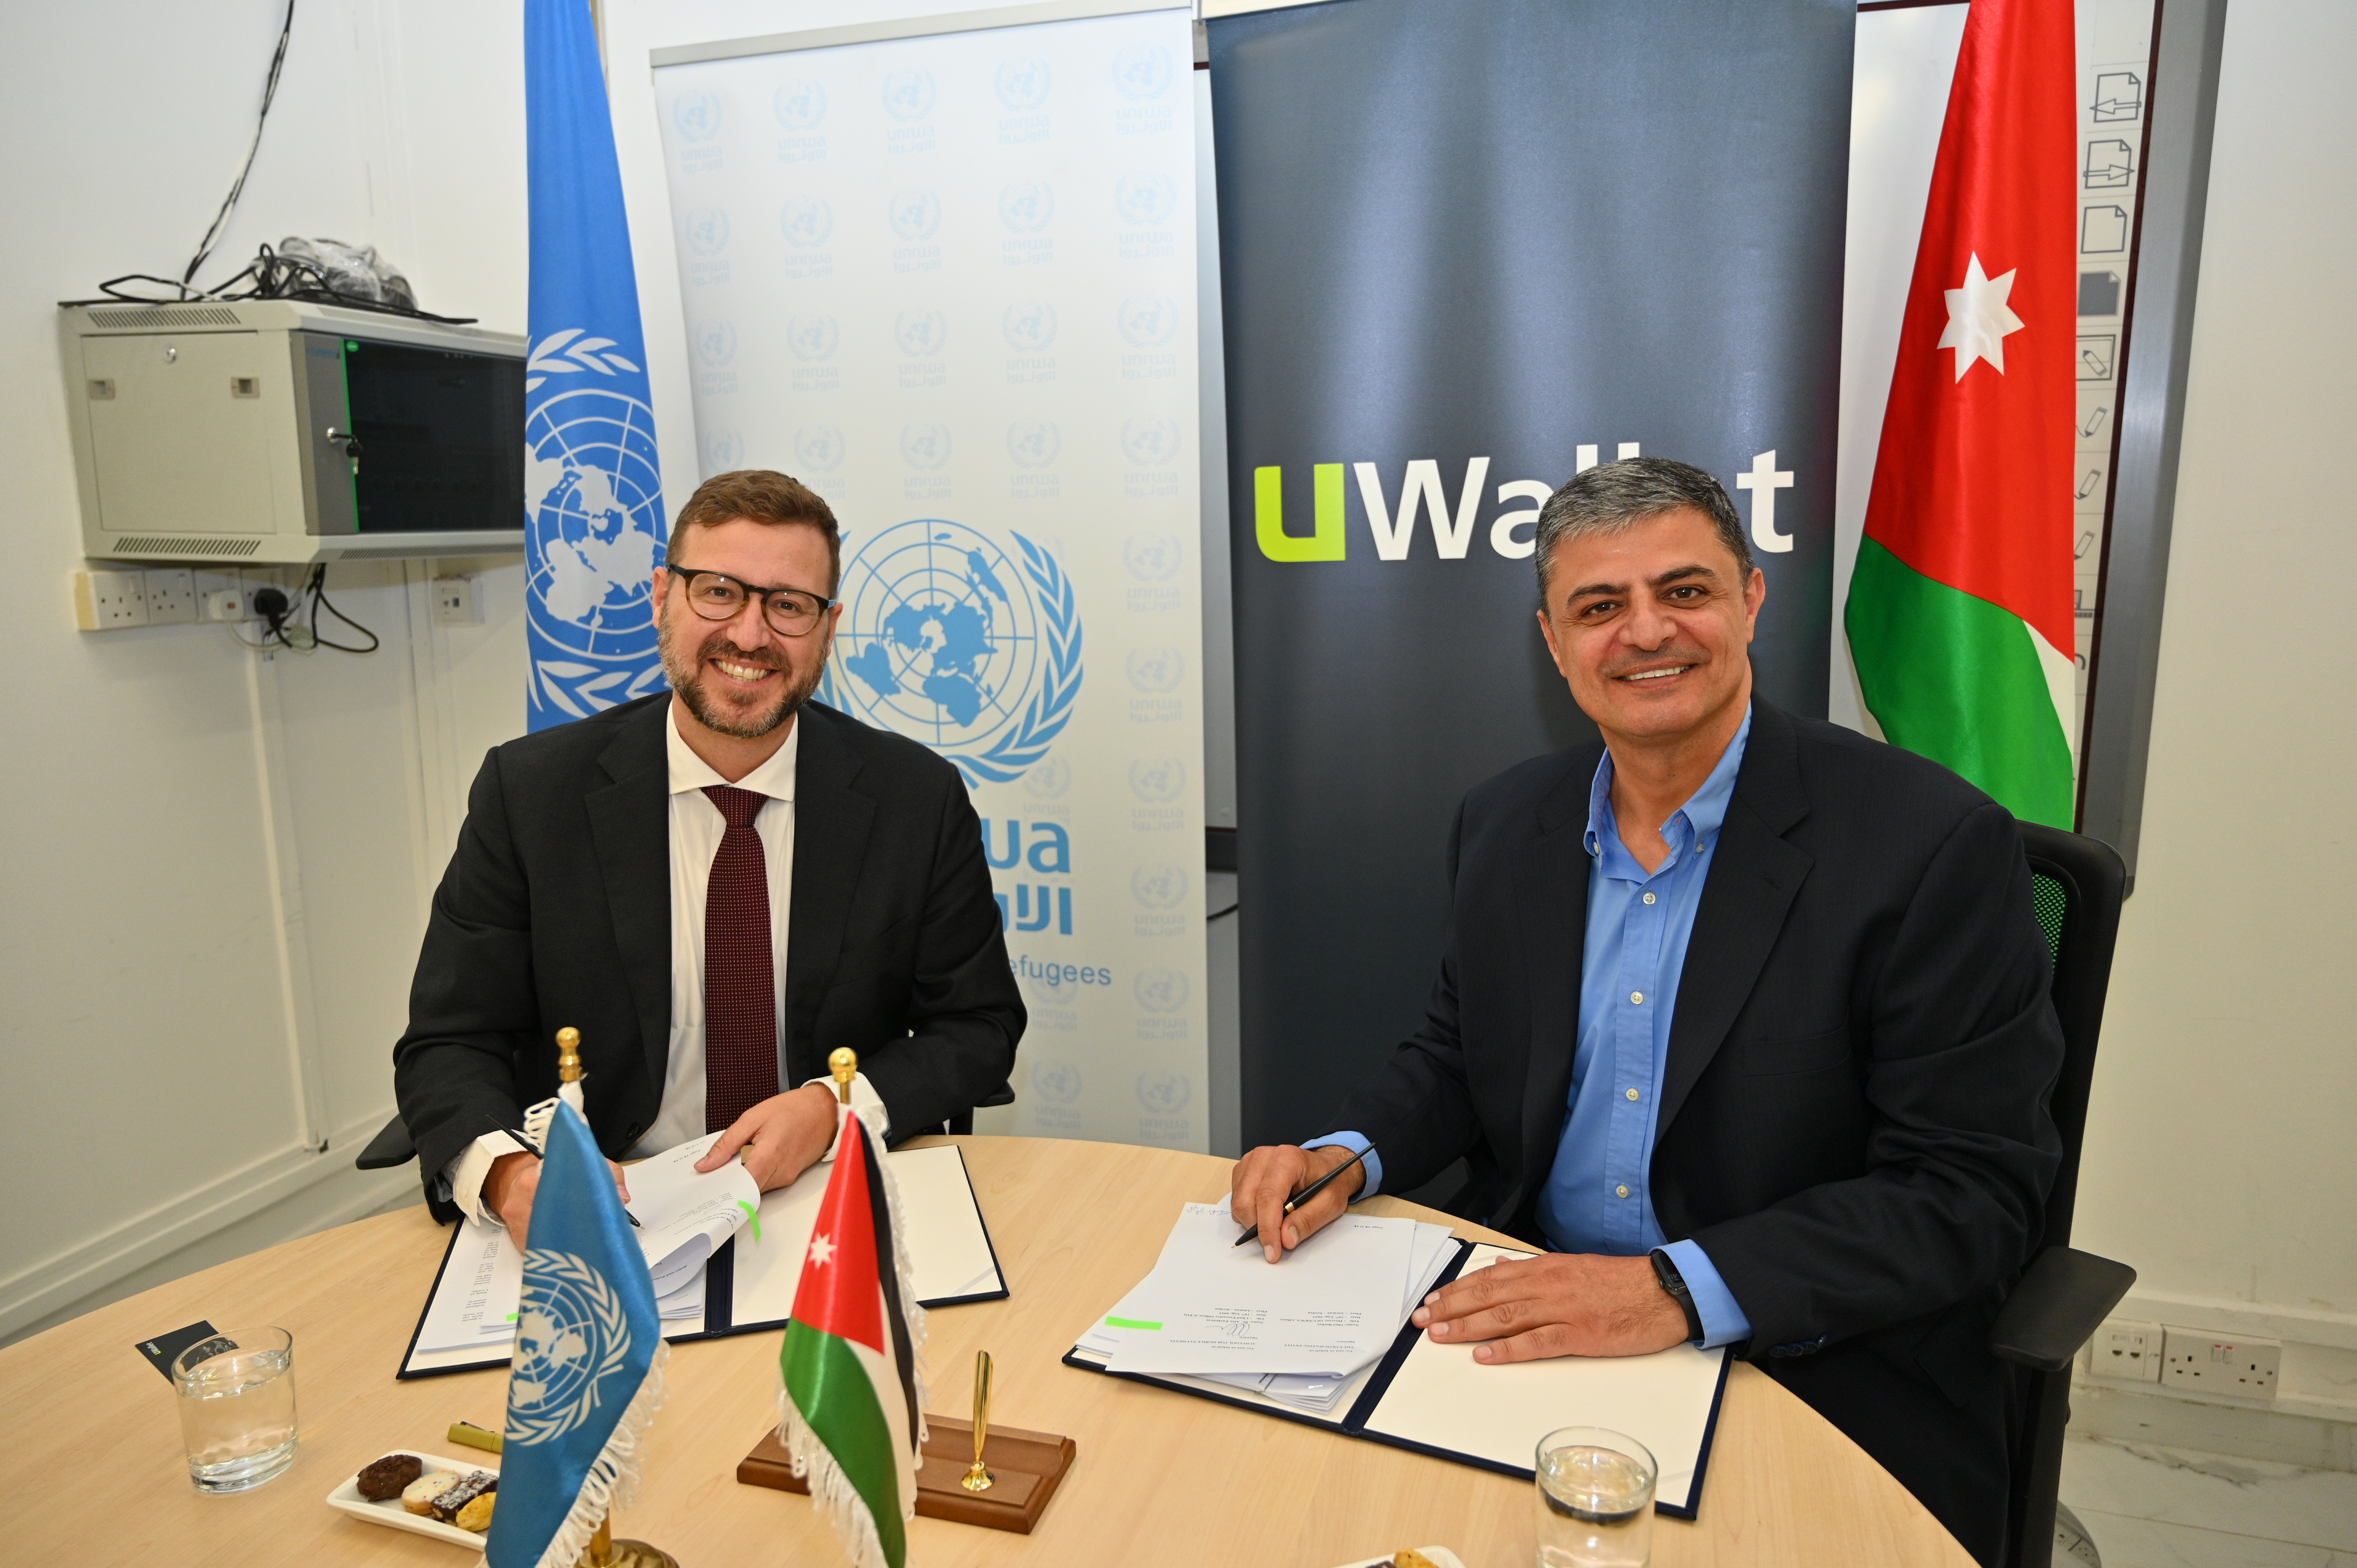 UWallet و الأونروا يتشاركان لتيسير وصول المساعدات المالية للاجئين الفلسطينيين في الأردن